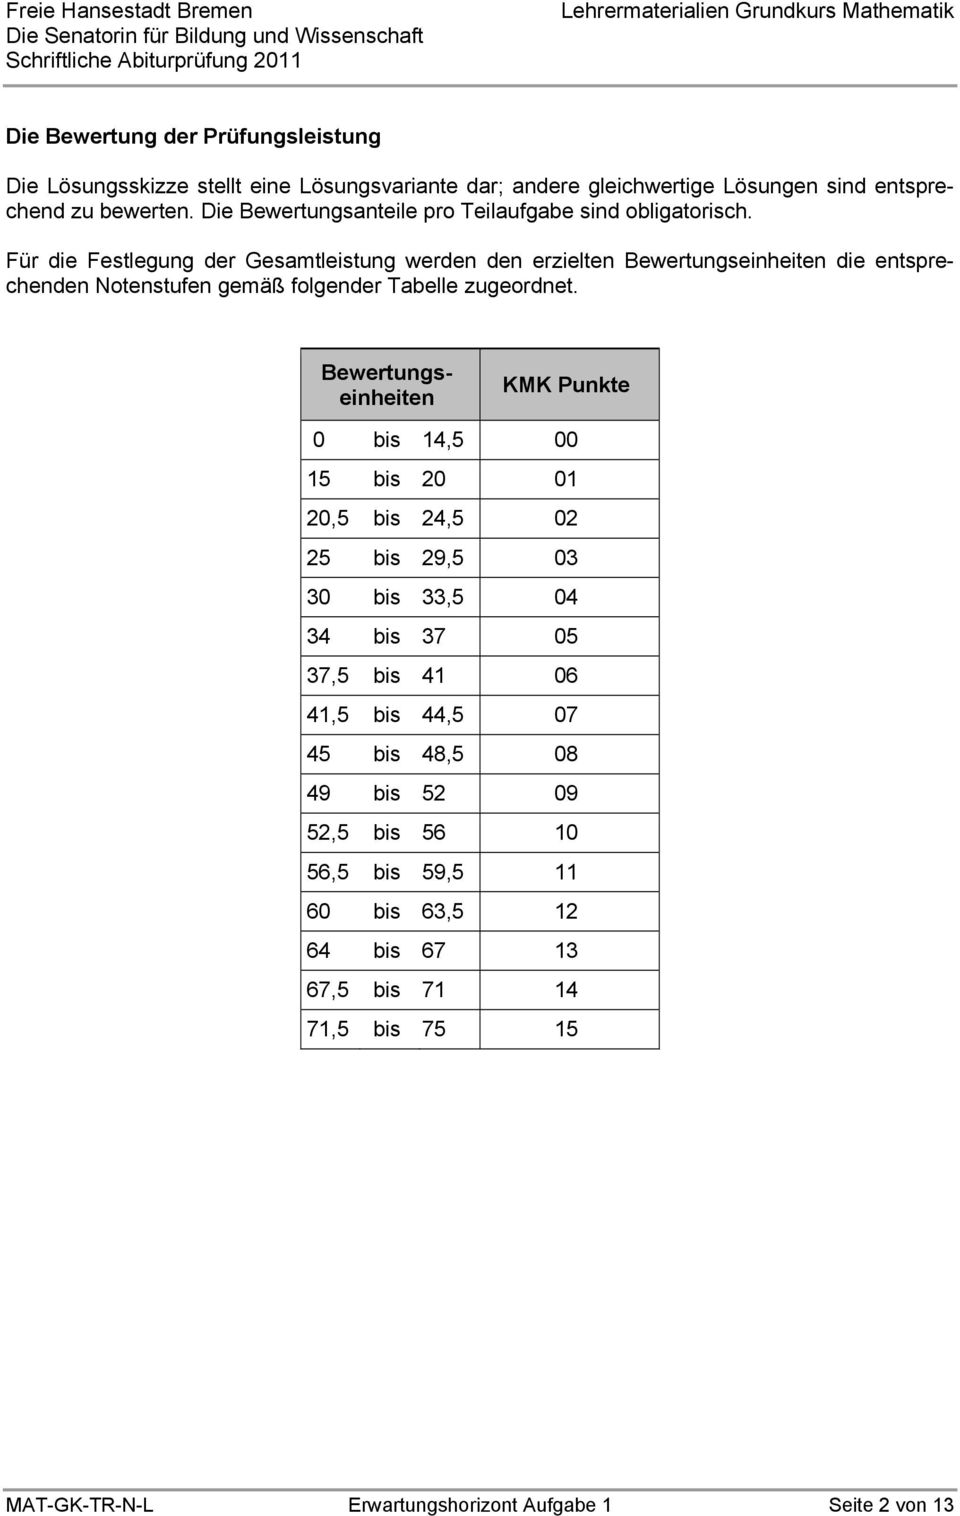 entsprechenden Notenstufen gemäß folgender Tabelle zugeordnet ewertungseinheiten KMK Punkte 0 bis 14,5 00 15 bis 20 01 20,5 bis 24,5 02 25 bis 29,5 03 30 bis 33,5 04 34 bis 37 05 37,5 bis 41